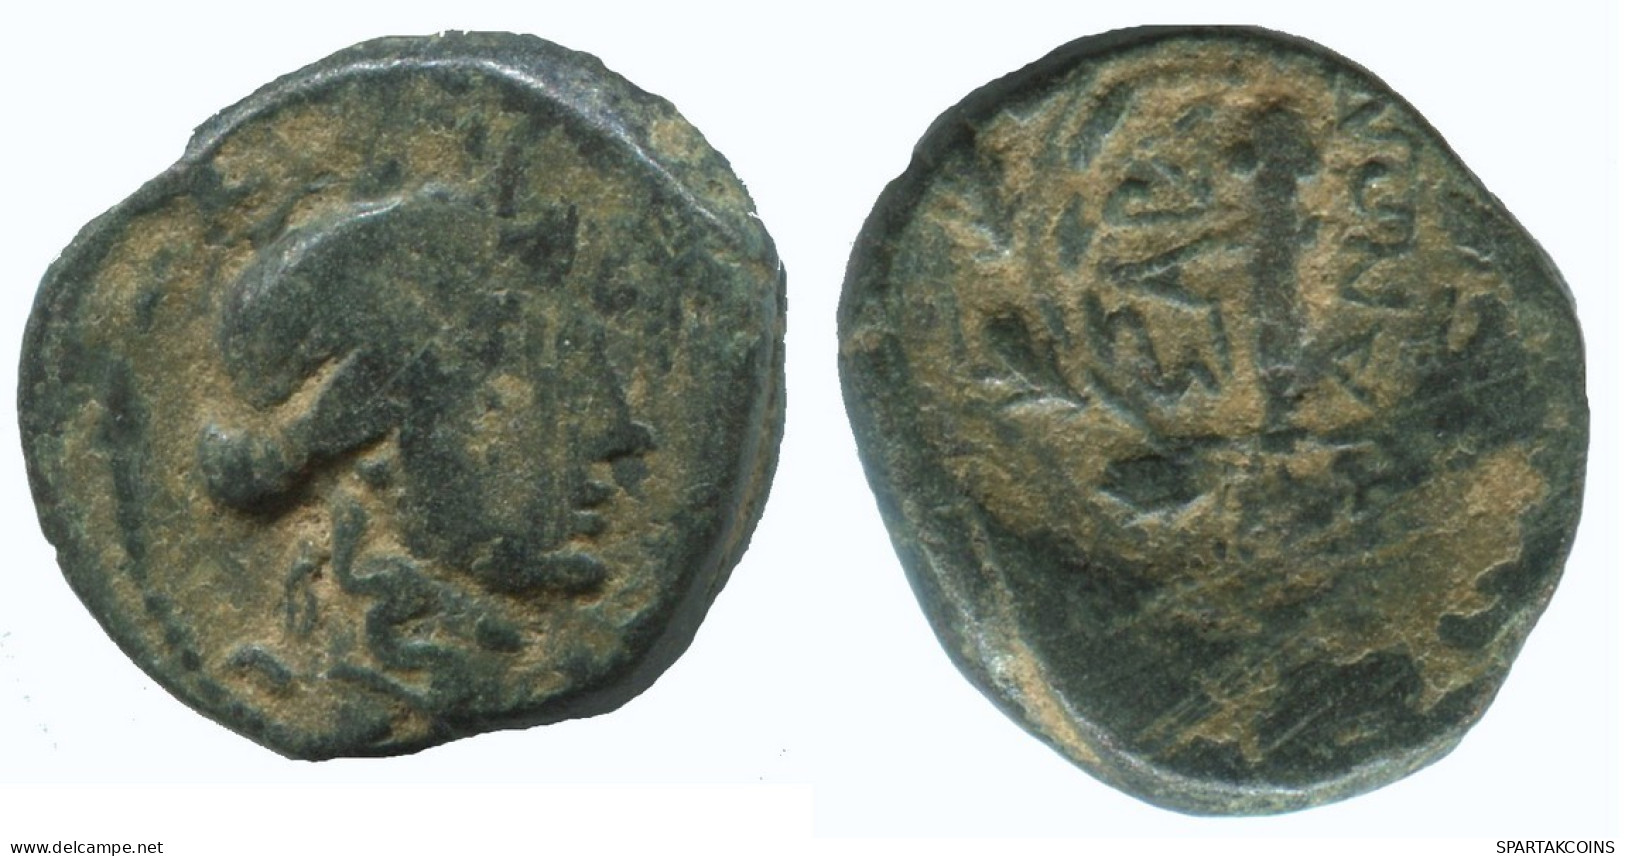 WREATH Authentic Original Ancient GREEK Coin 3.7g/17mm #NNN1425.9.U.A - Greche